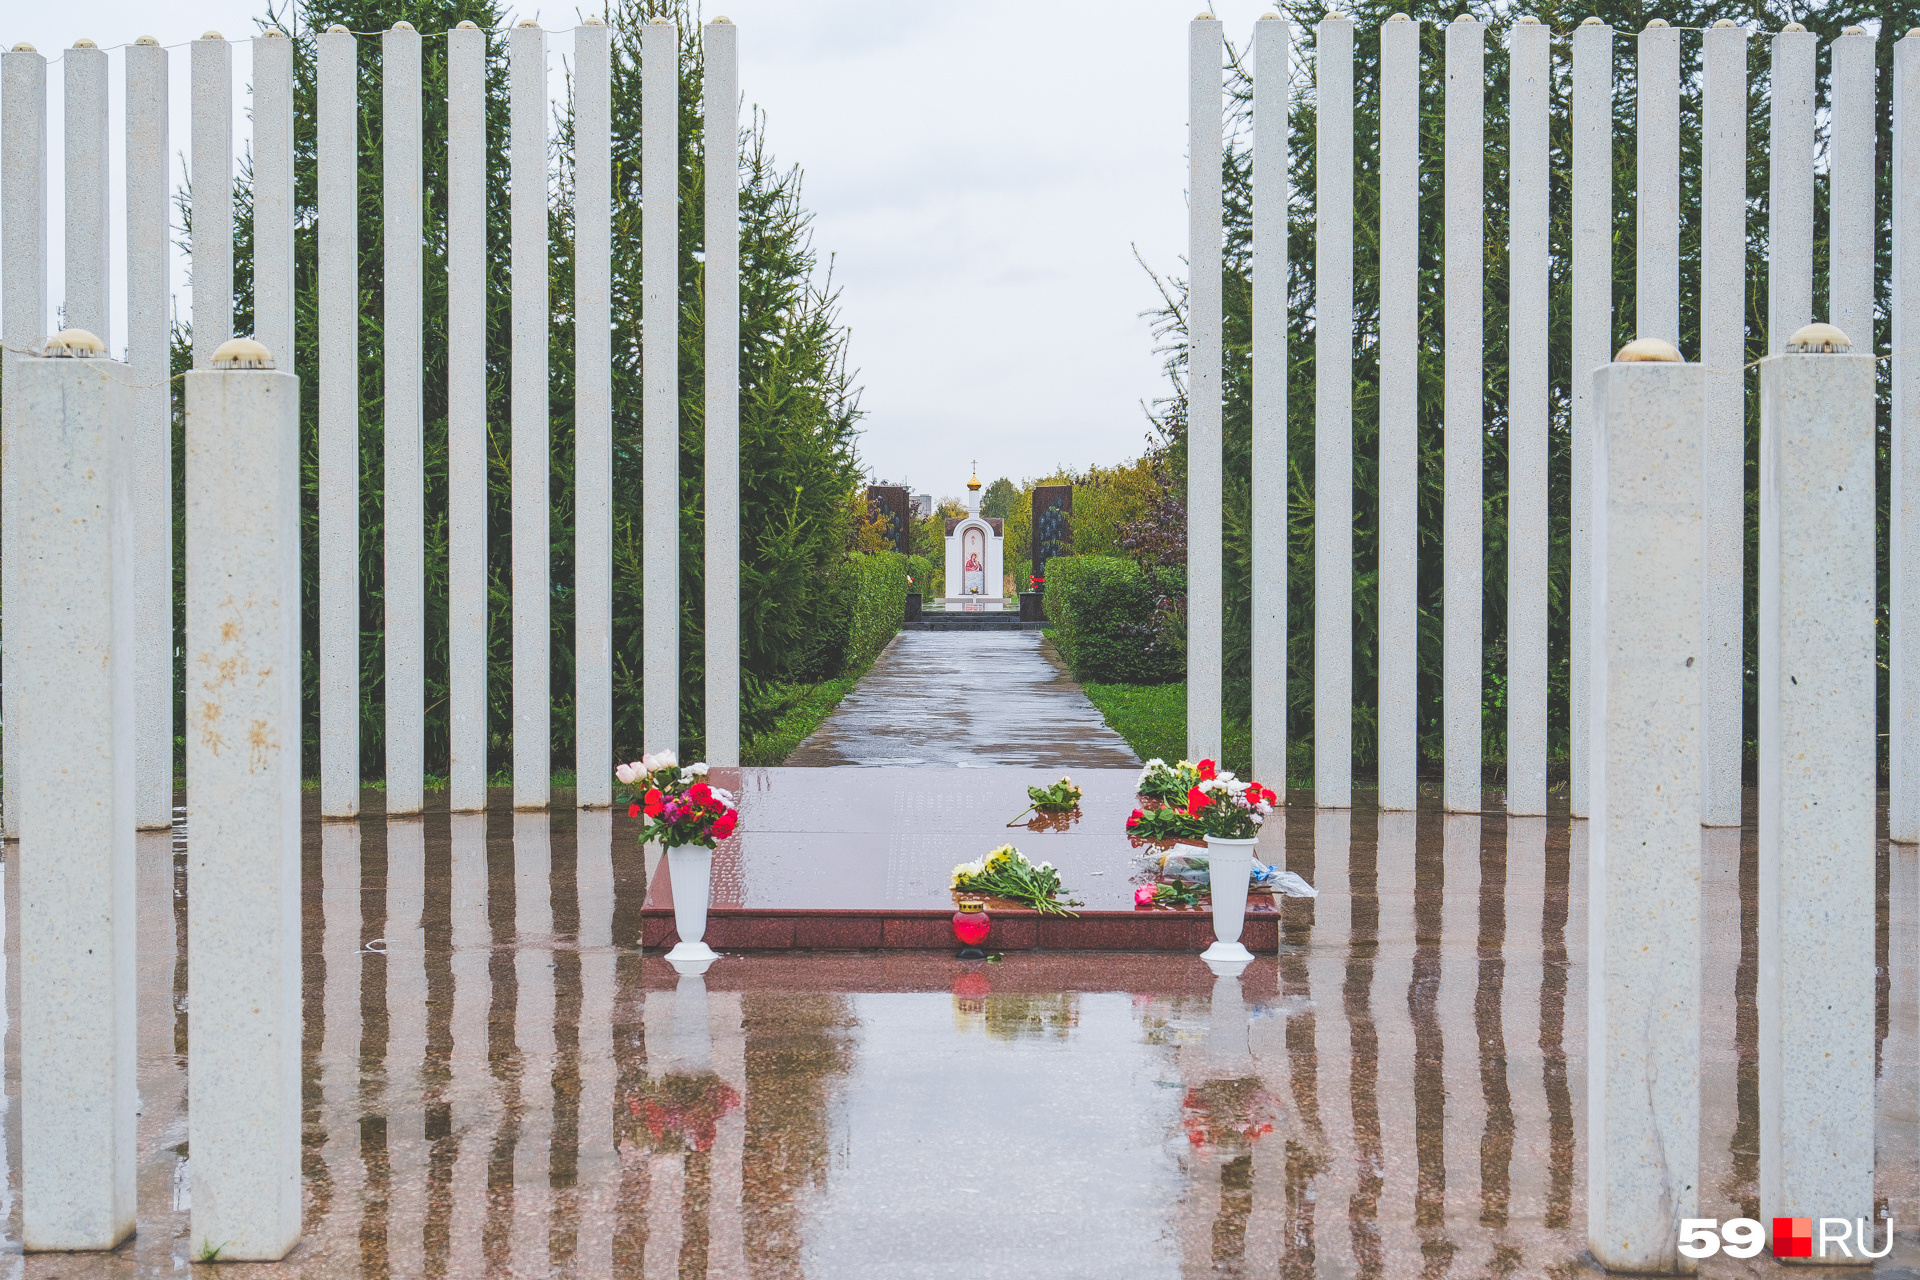 Мемориал находится на месте крушения в микрорайоне Ераничи и представляет собой 88 белых каменных «свечей»-колонн по количеству погибших